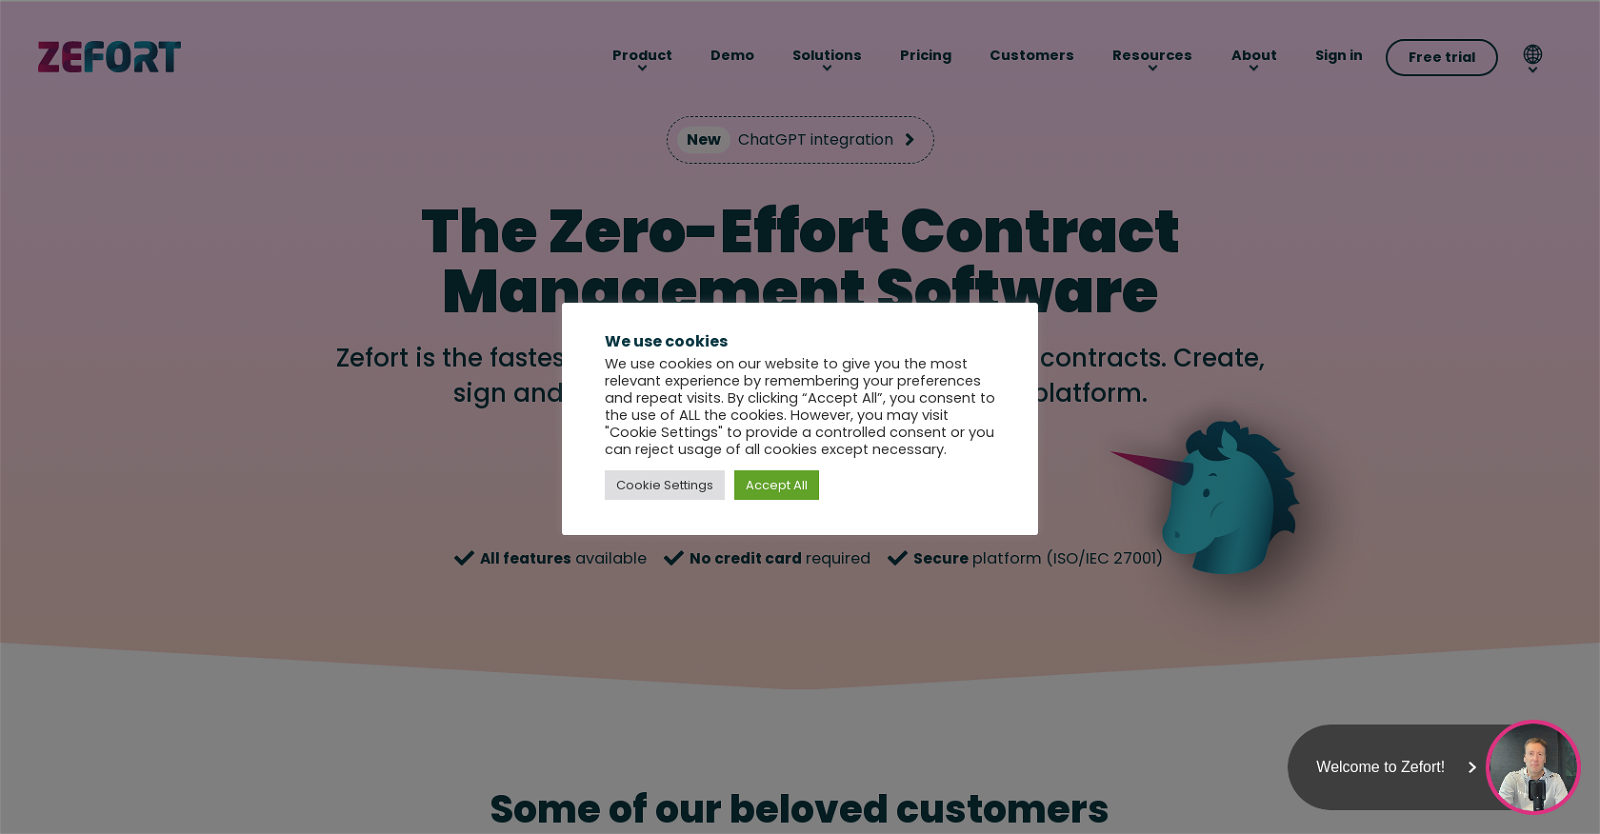 Zefort website